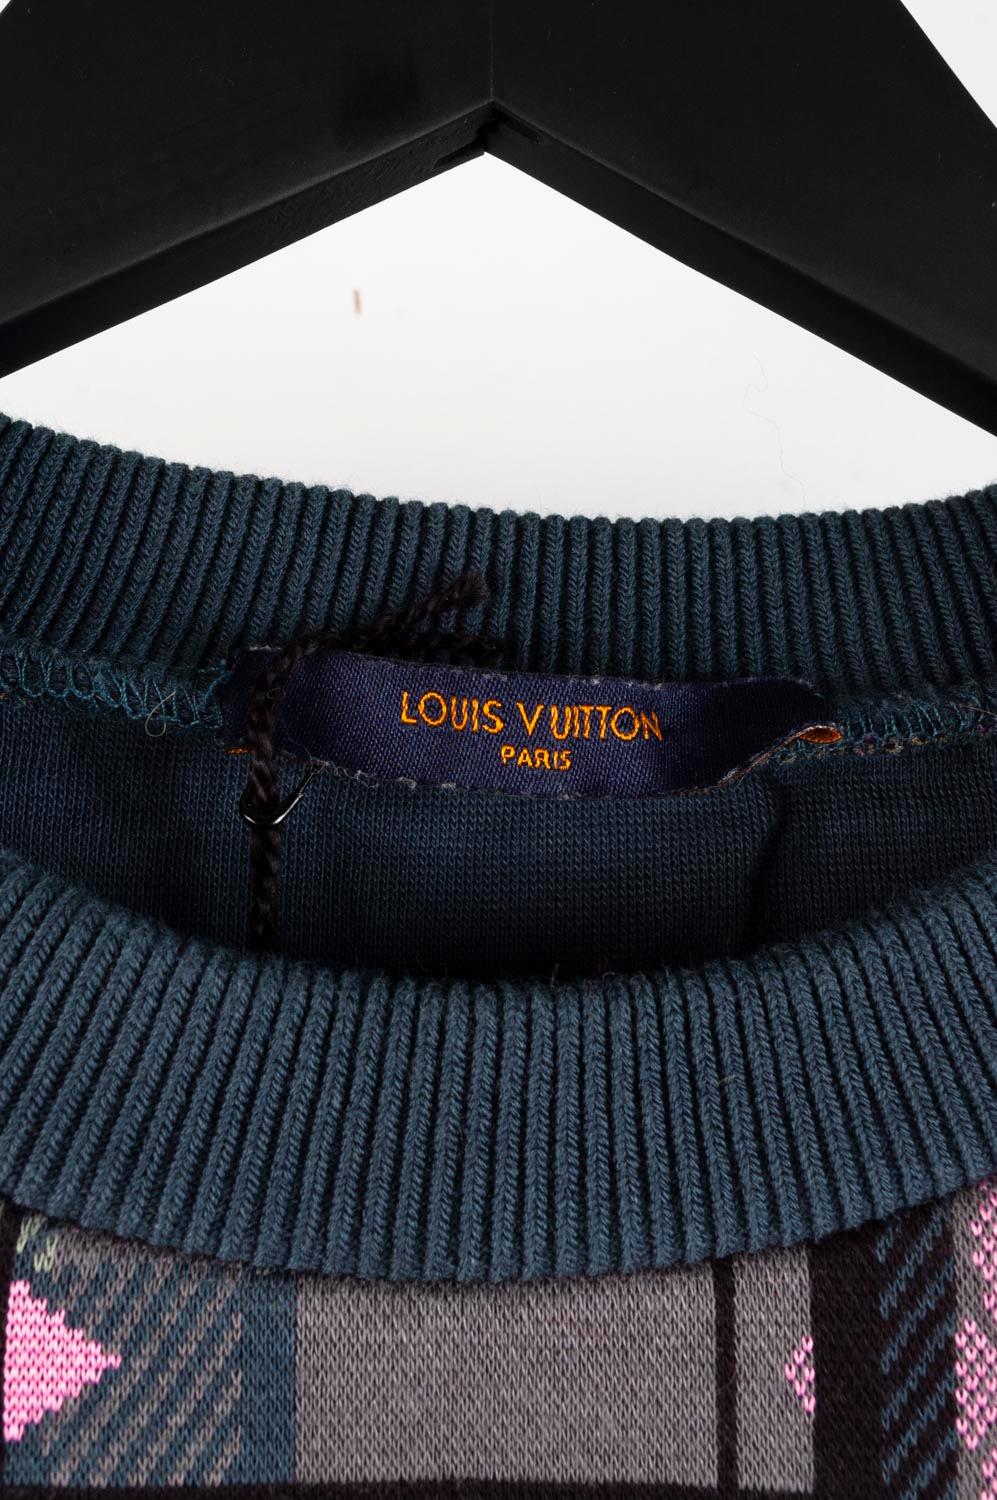 Louis Vuitton Jumper Herren Sweatshirt Top Größe M S521 3